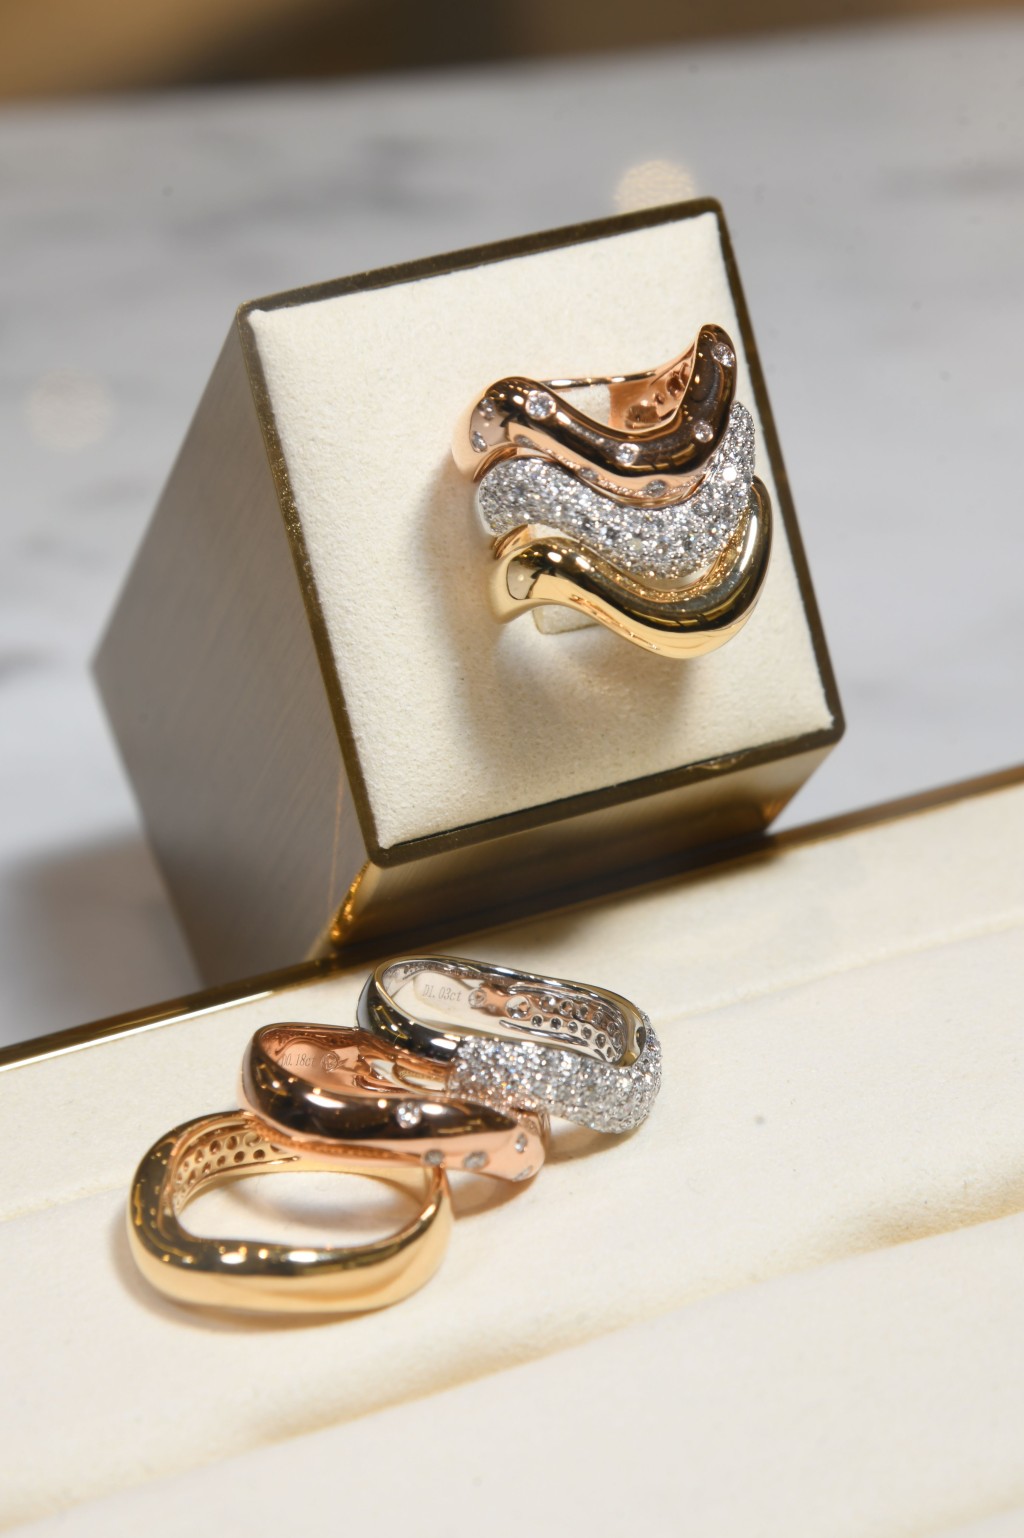 同樣可以單獨或疊戴的流麗型態鑽石指環。